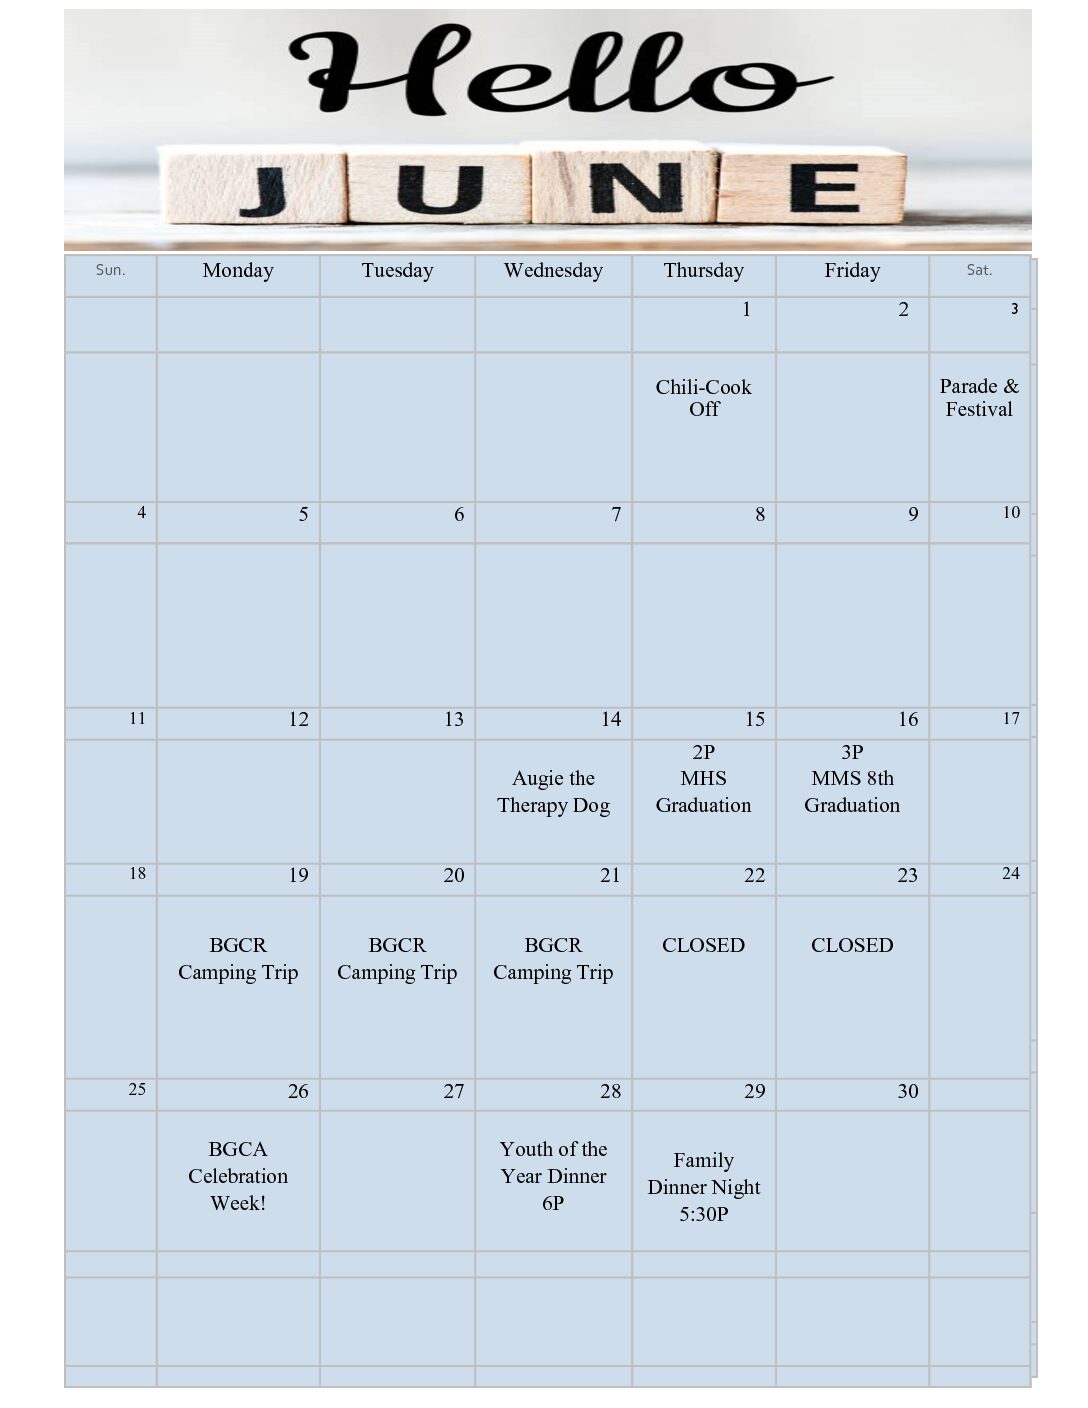 McKinleyville Teen Center's Calendar